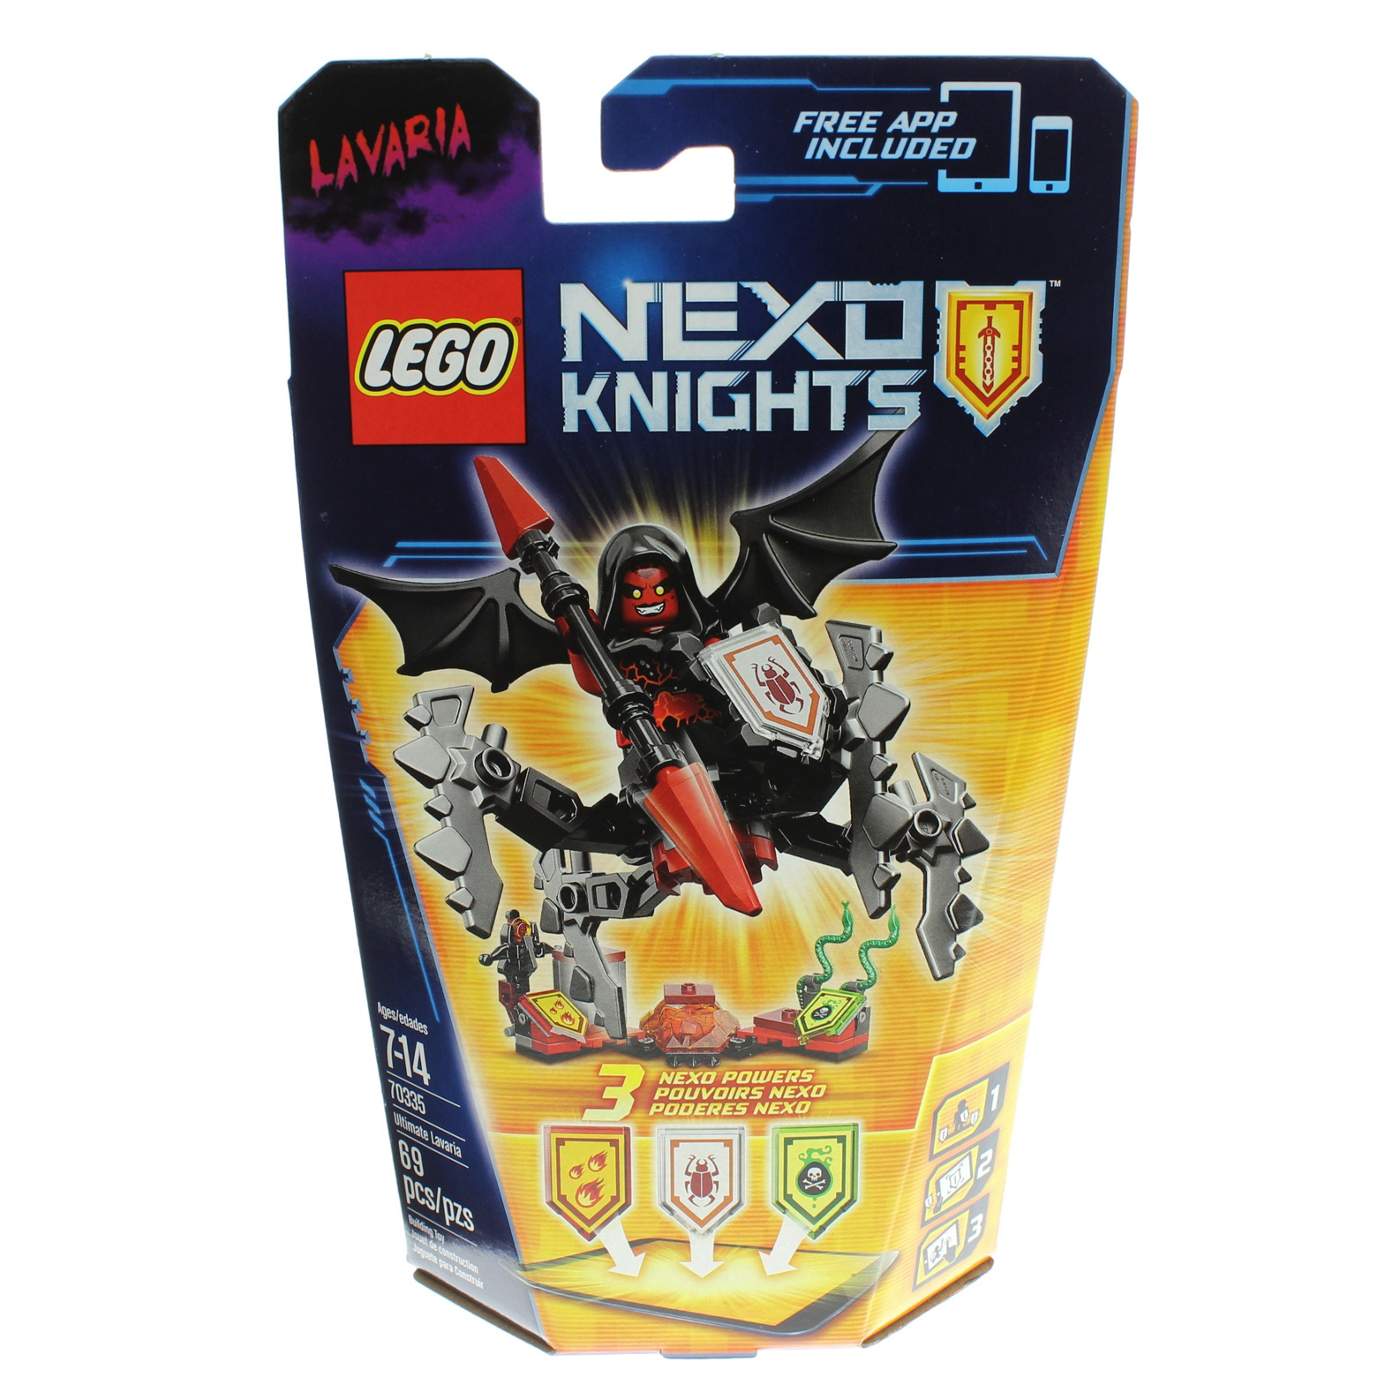 LEGO Nexo Knights Lavaria; image 1 of 2